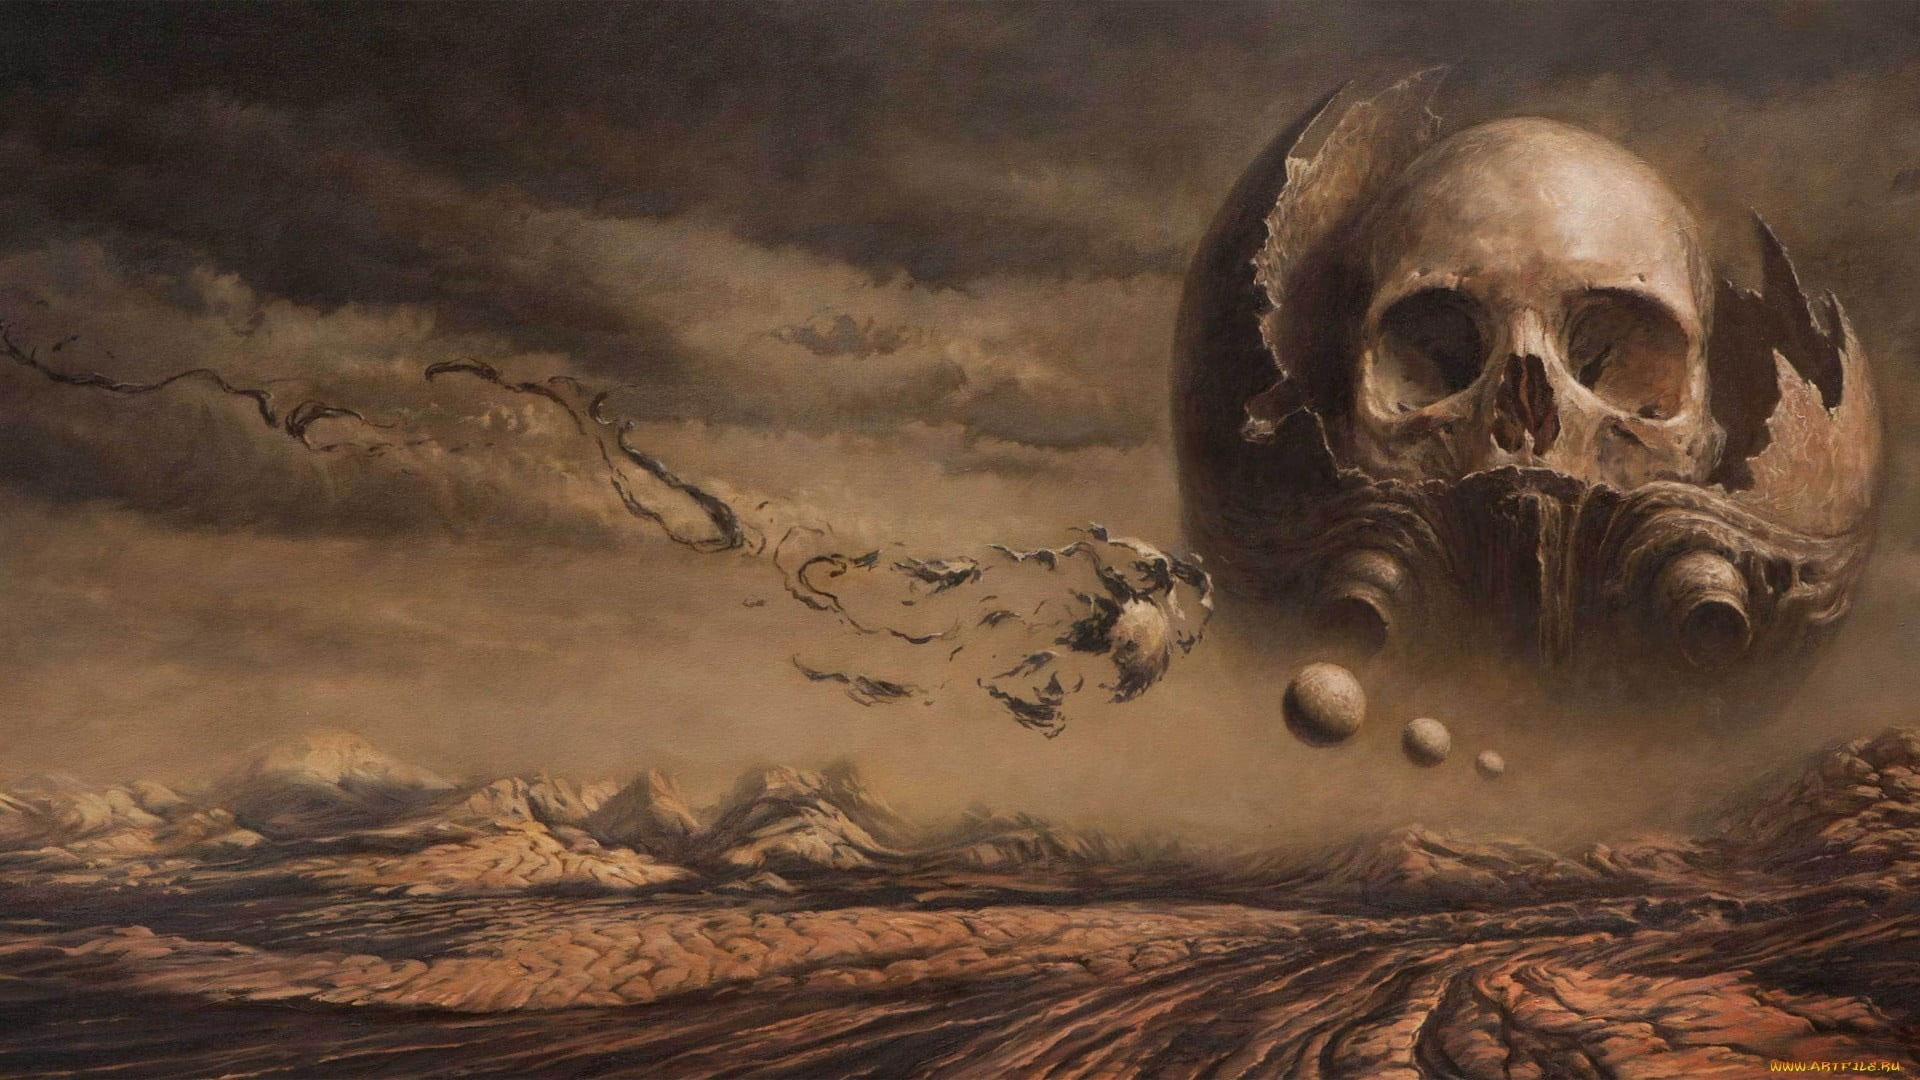 Gray Skull Wallpaper, Fantasy Art